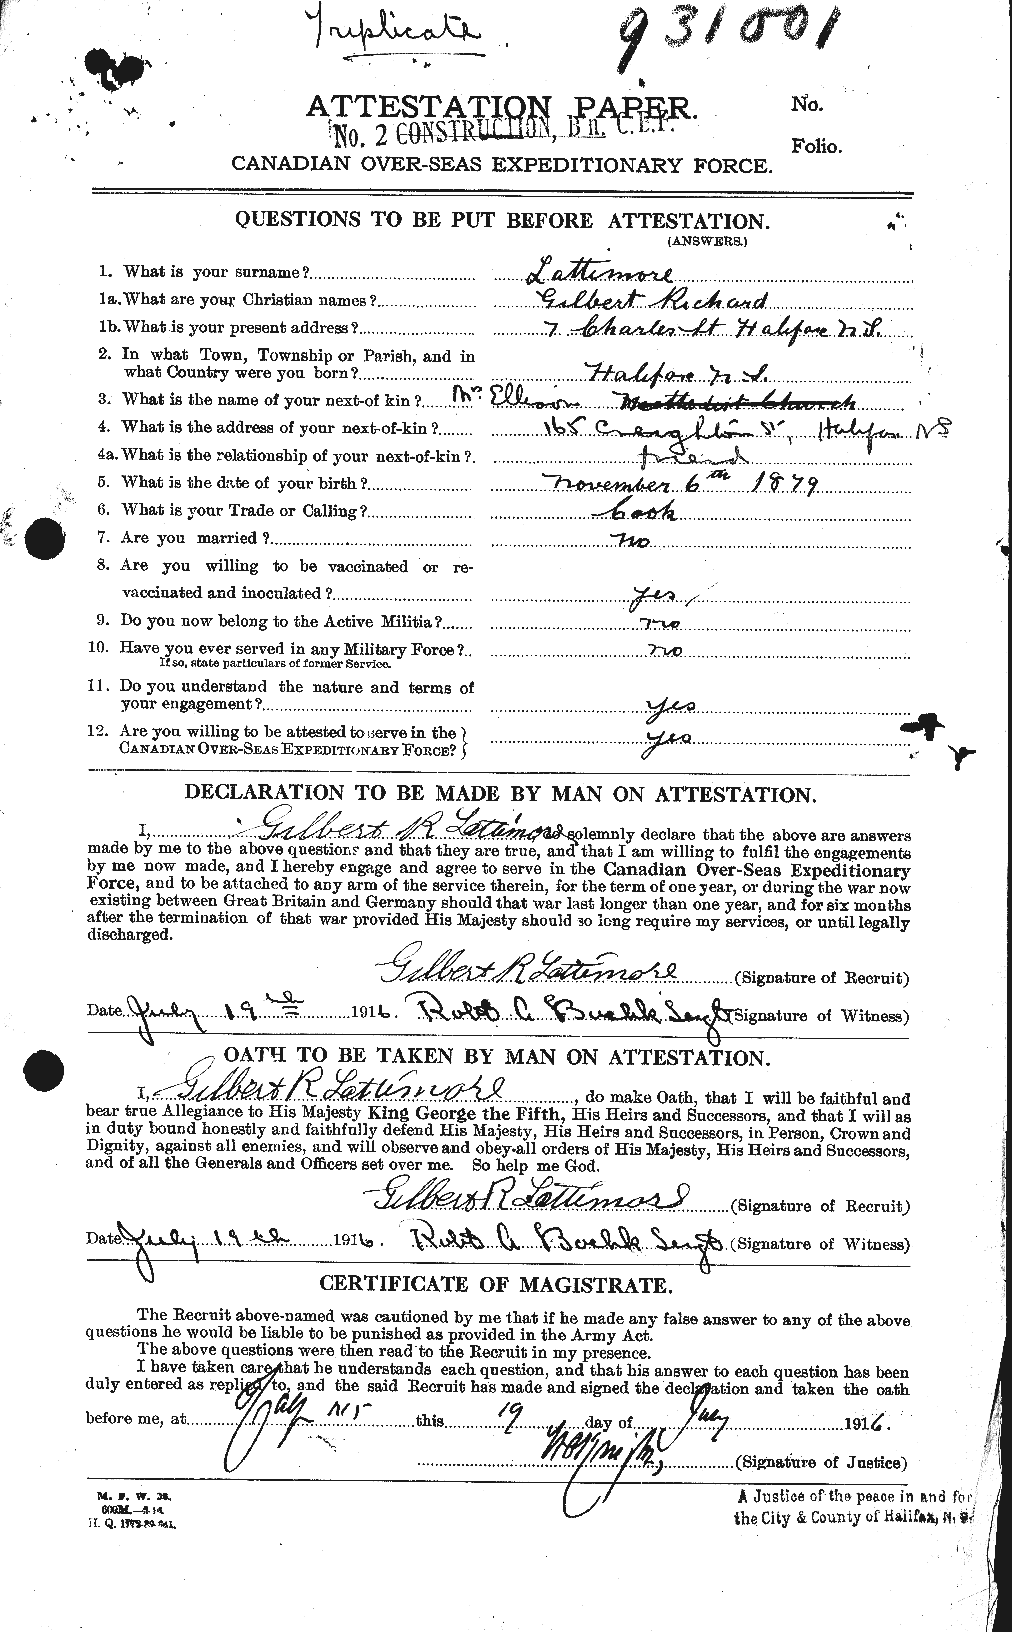 Dossiers du Personnel de la Première Guerre mondiale - CEC 455373a